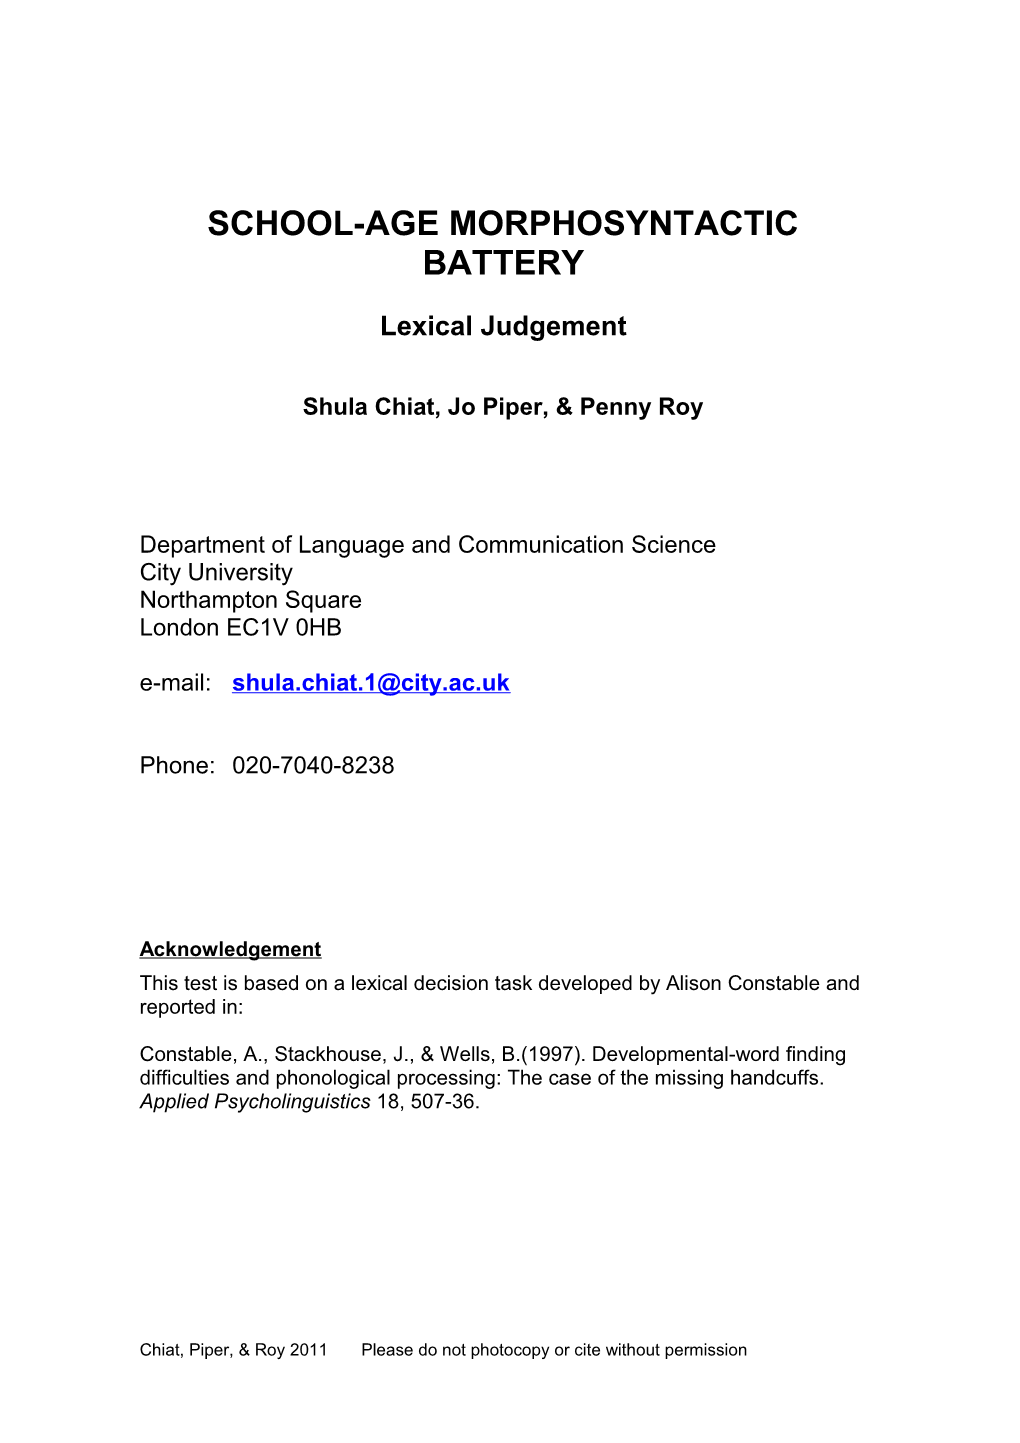 School-Age Morphosyntactic Battery